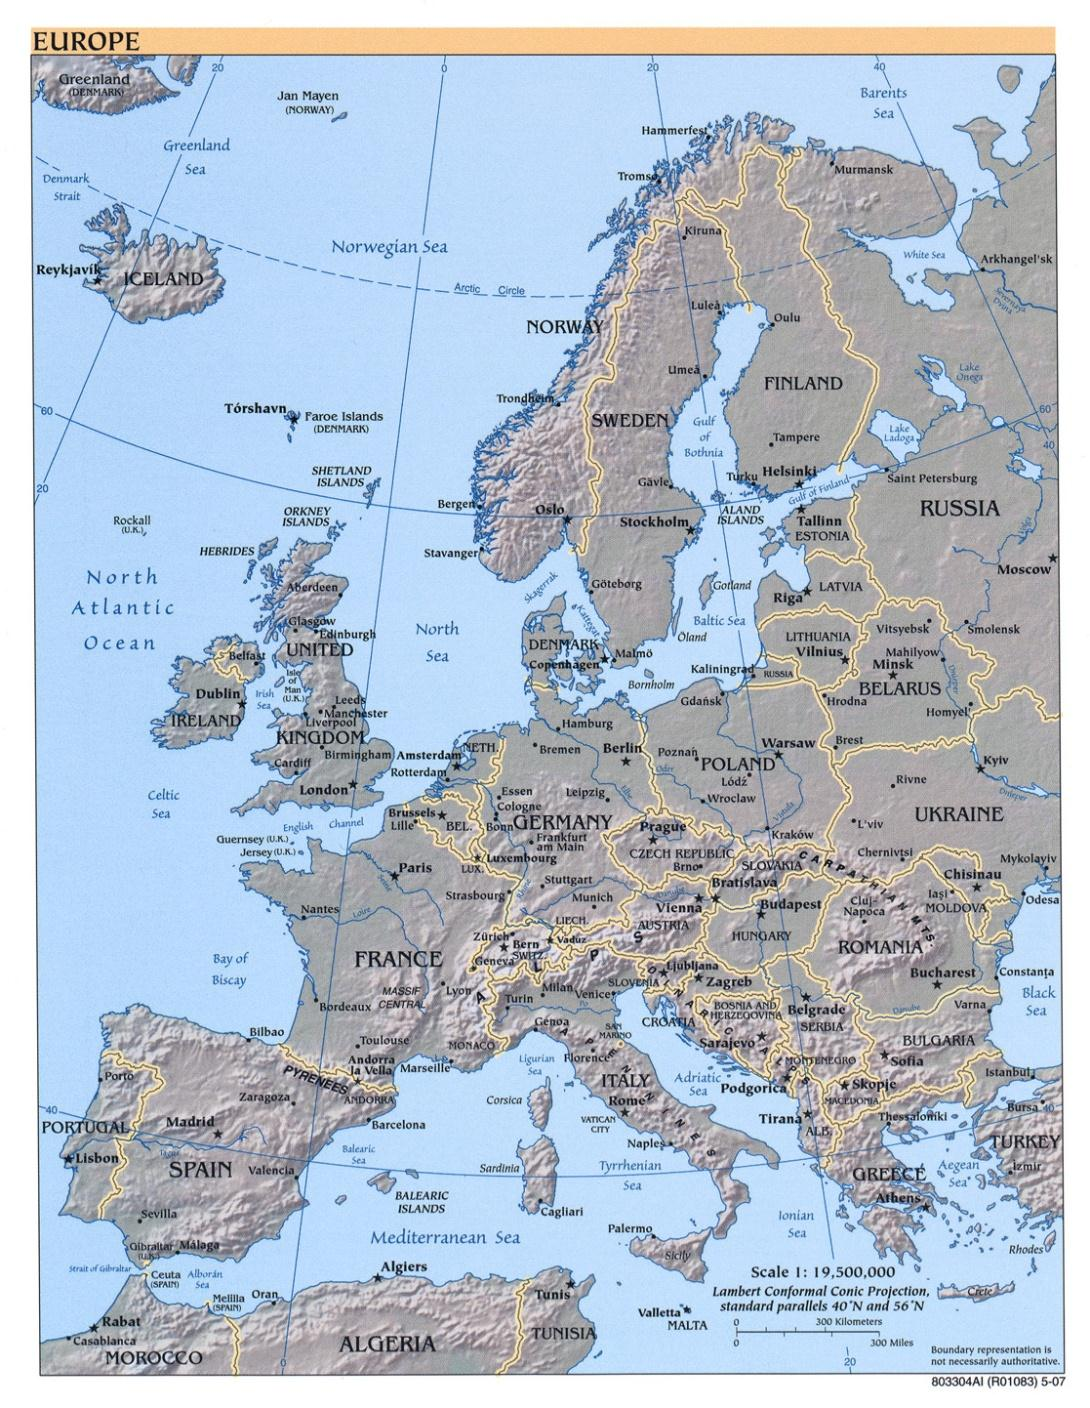 Németország O104:H4 EAEC/EHEC endémiás területté vált Németország+ 13 EU/EEA Ausztria Cseh Köztársaság Dánia Franciaország Németország (41 cluster) Görögország Luxembourg Hollandia Norvégia